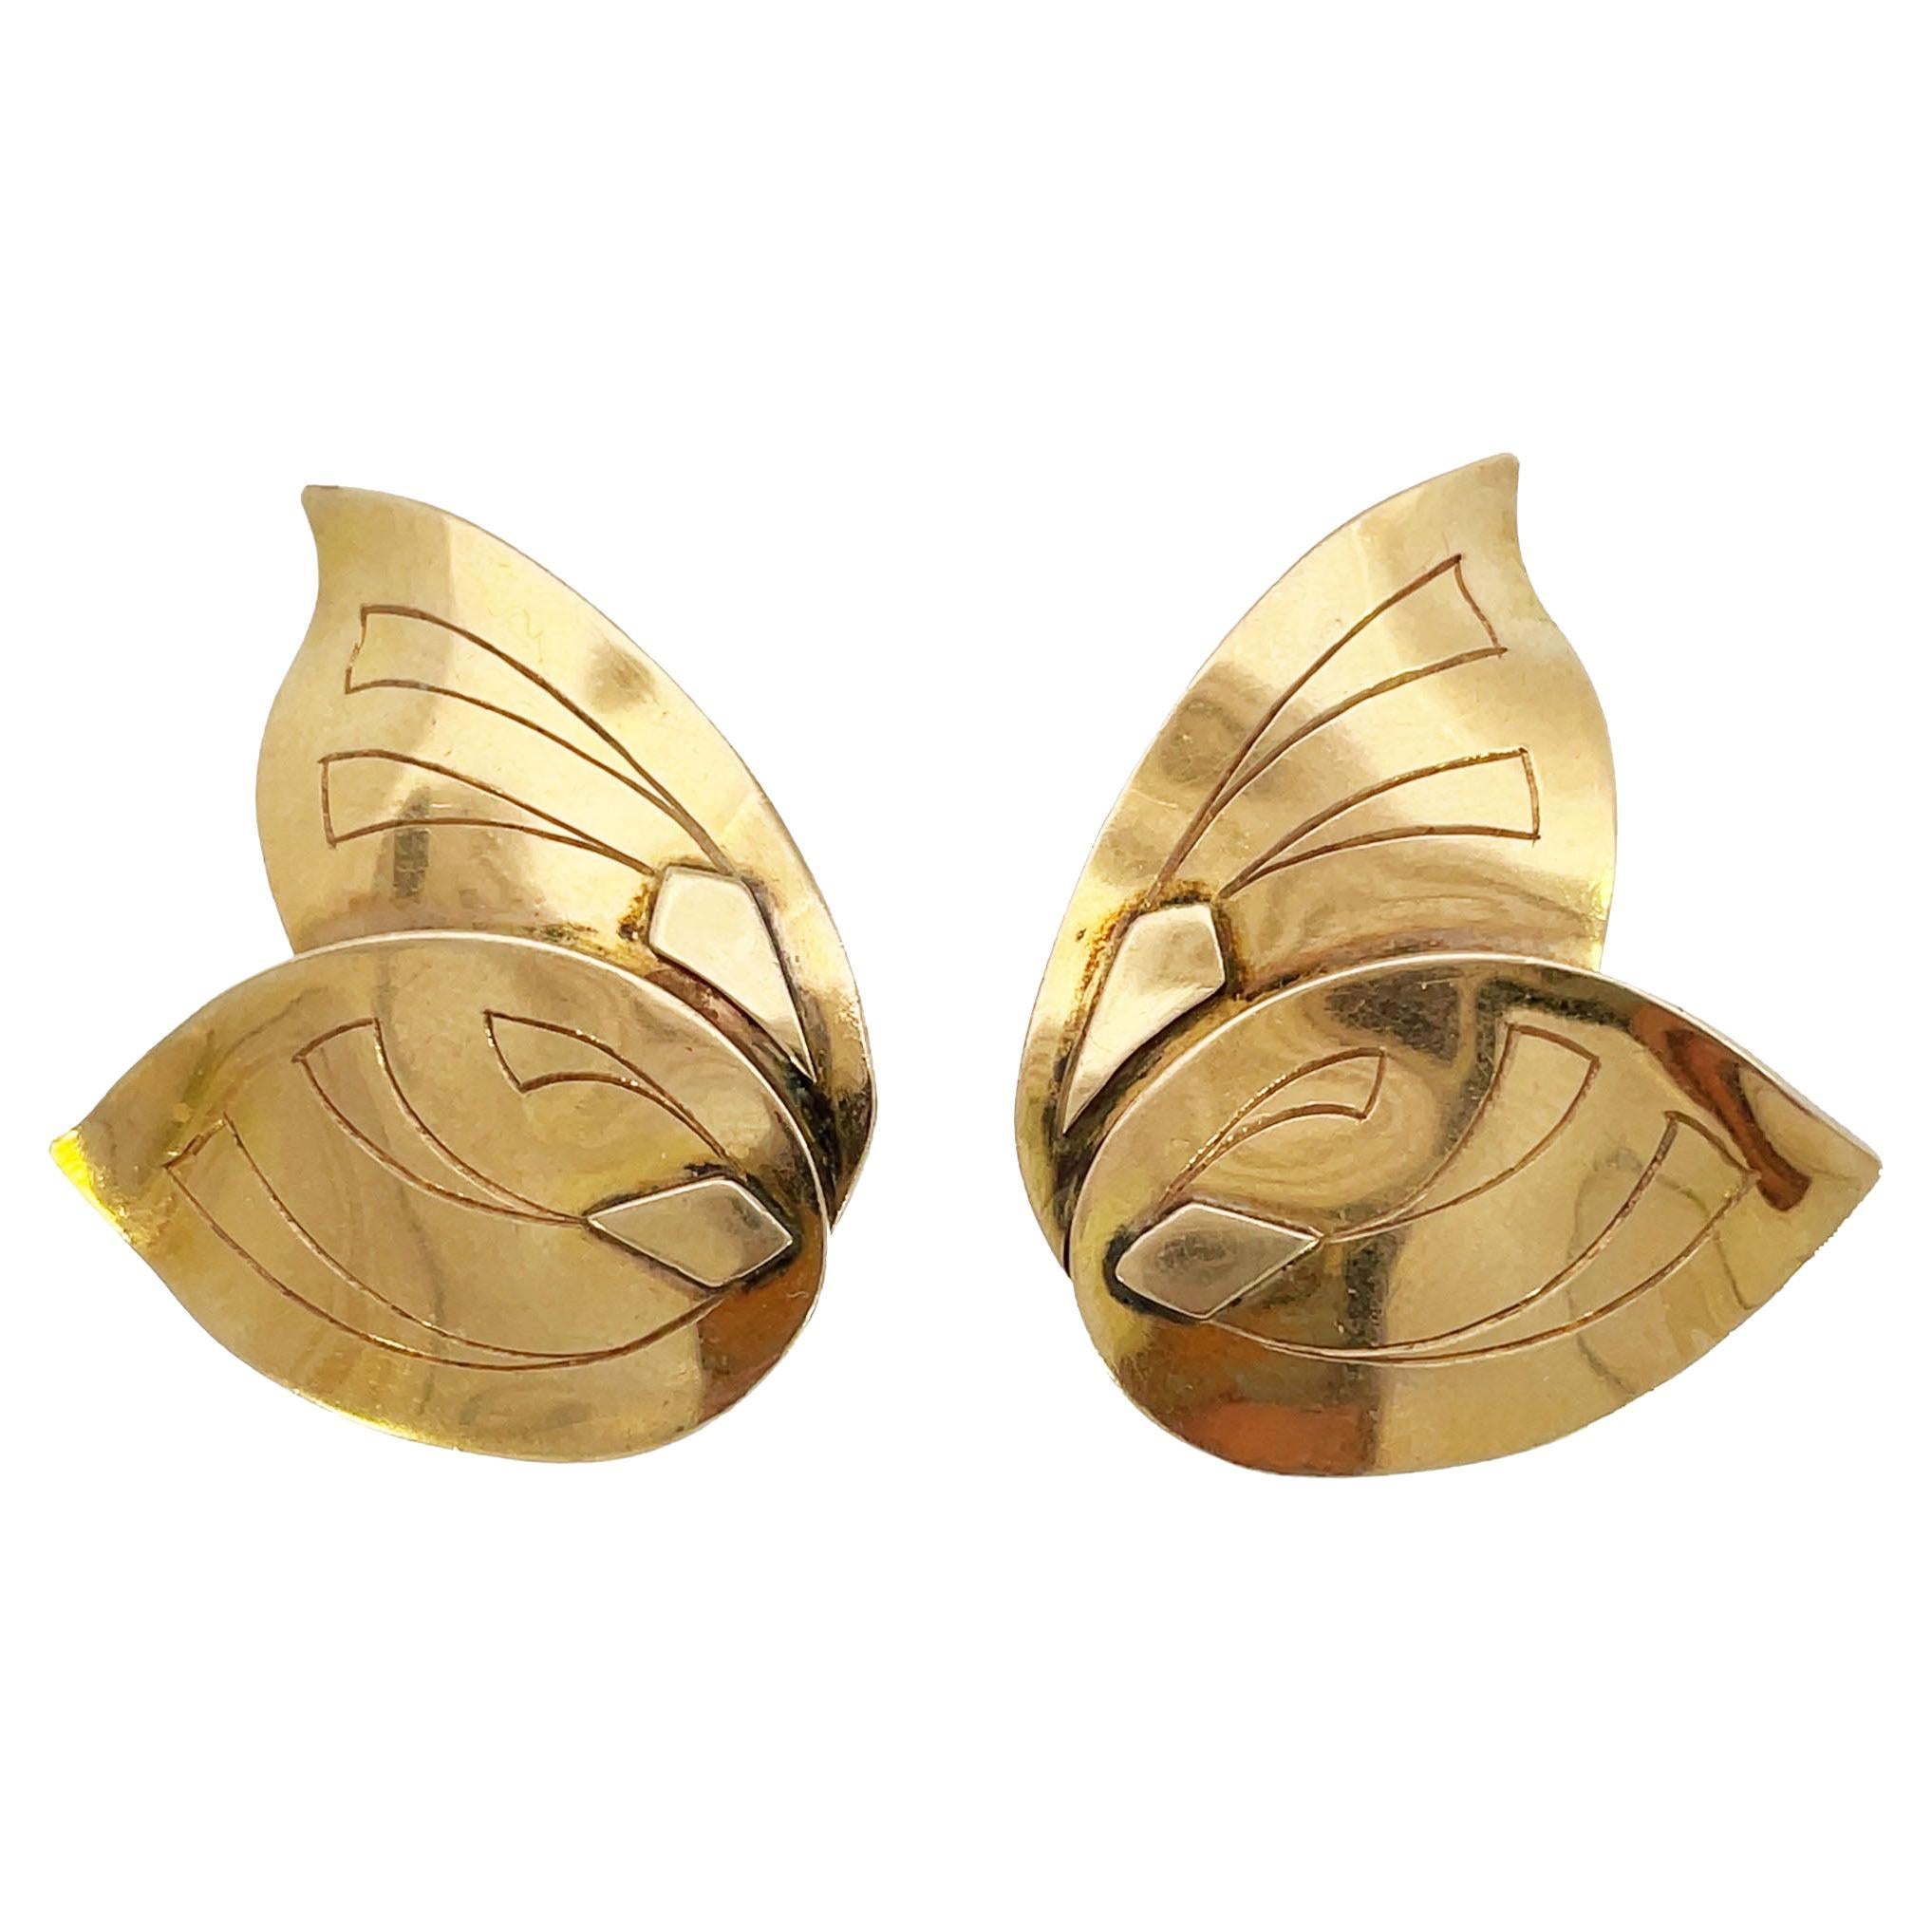 1950s Studio 14K Yellow Gold Butterfly Clip On Earrings